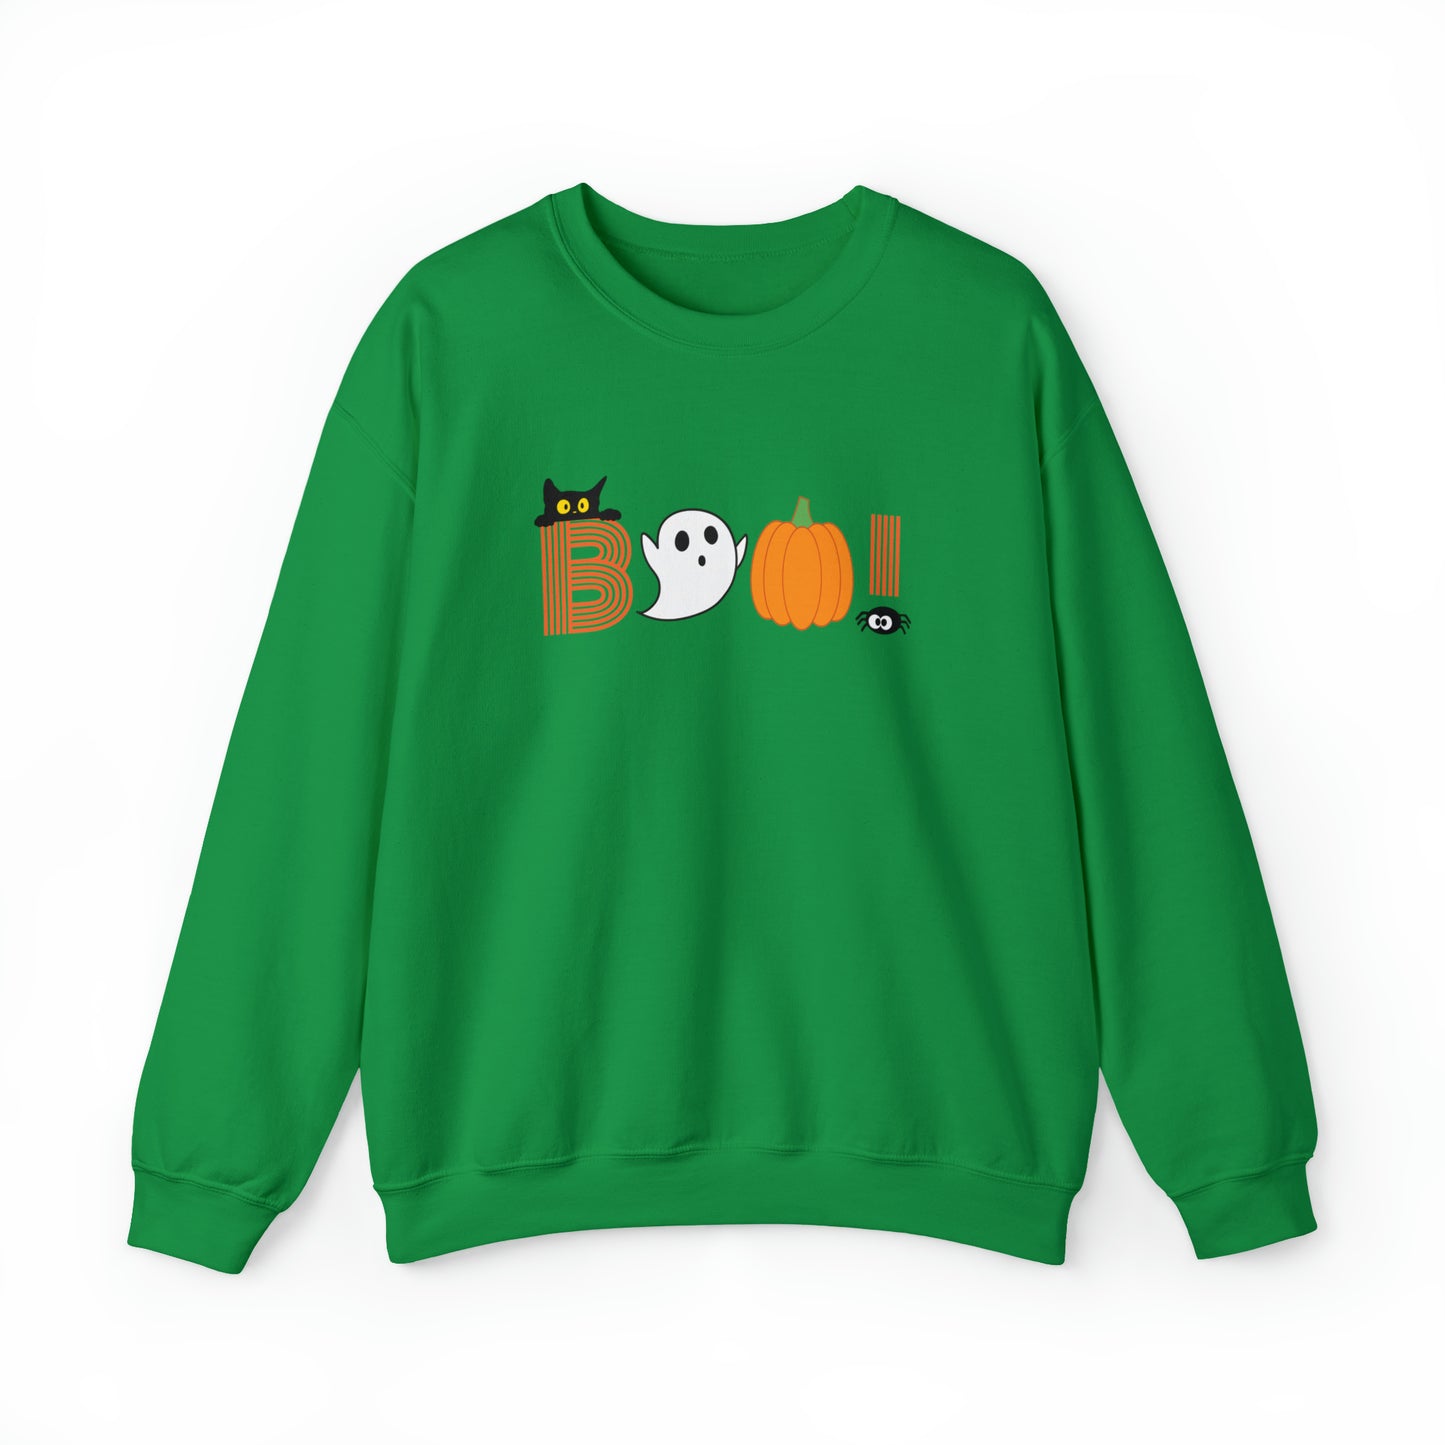 Boo! Halloween Sweatshirt